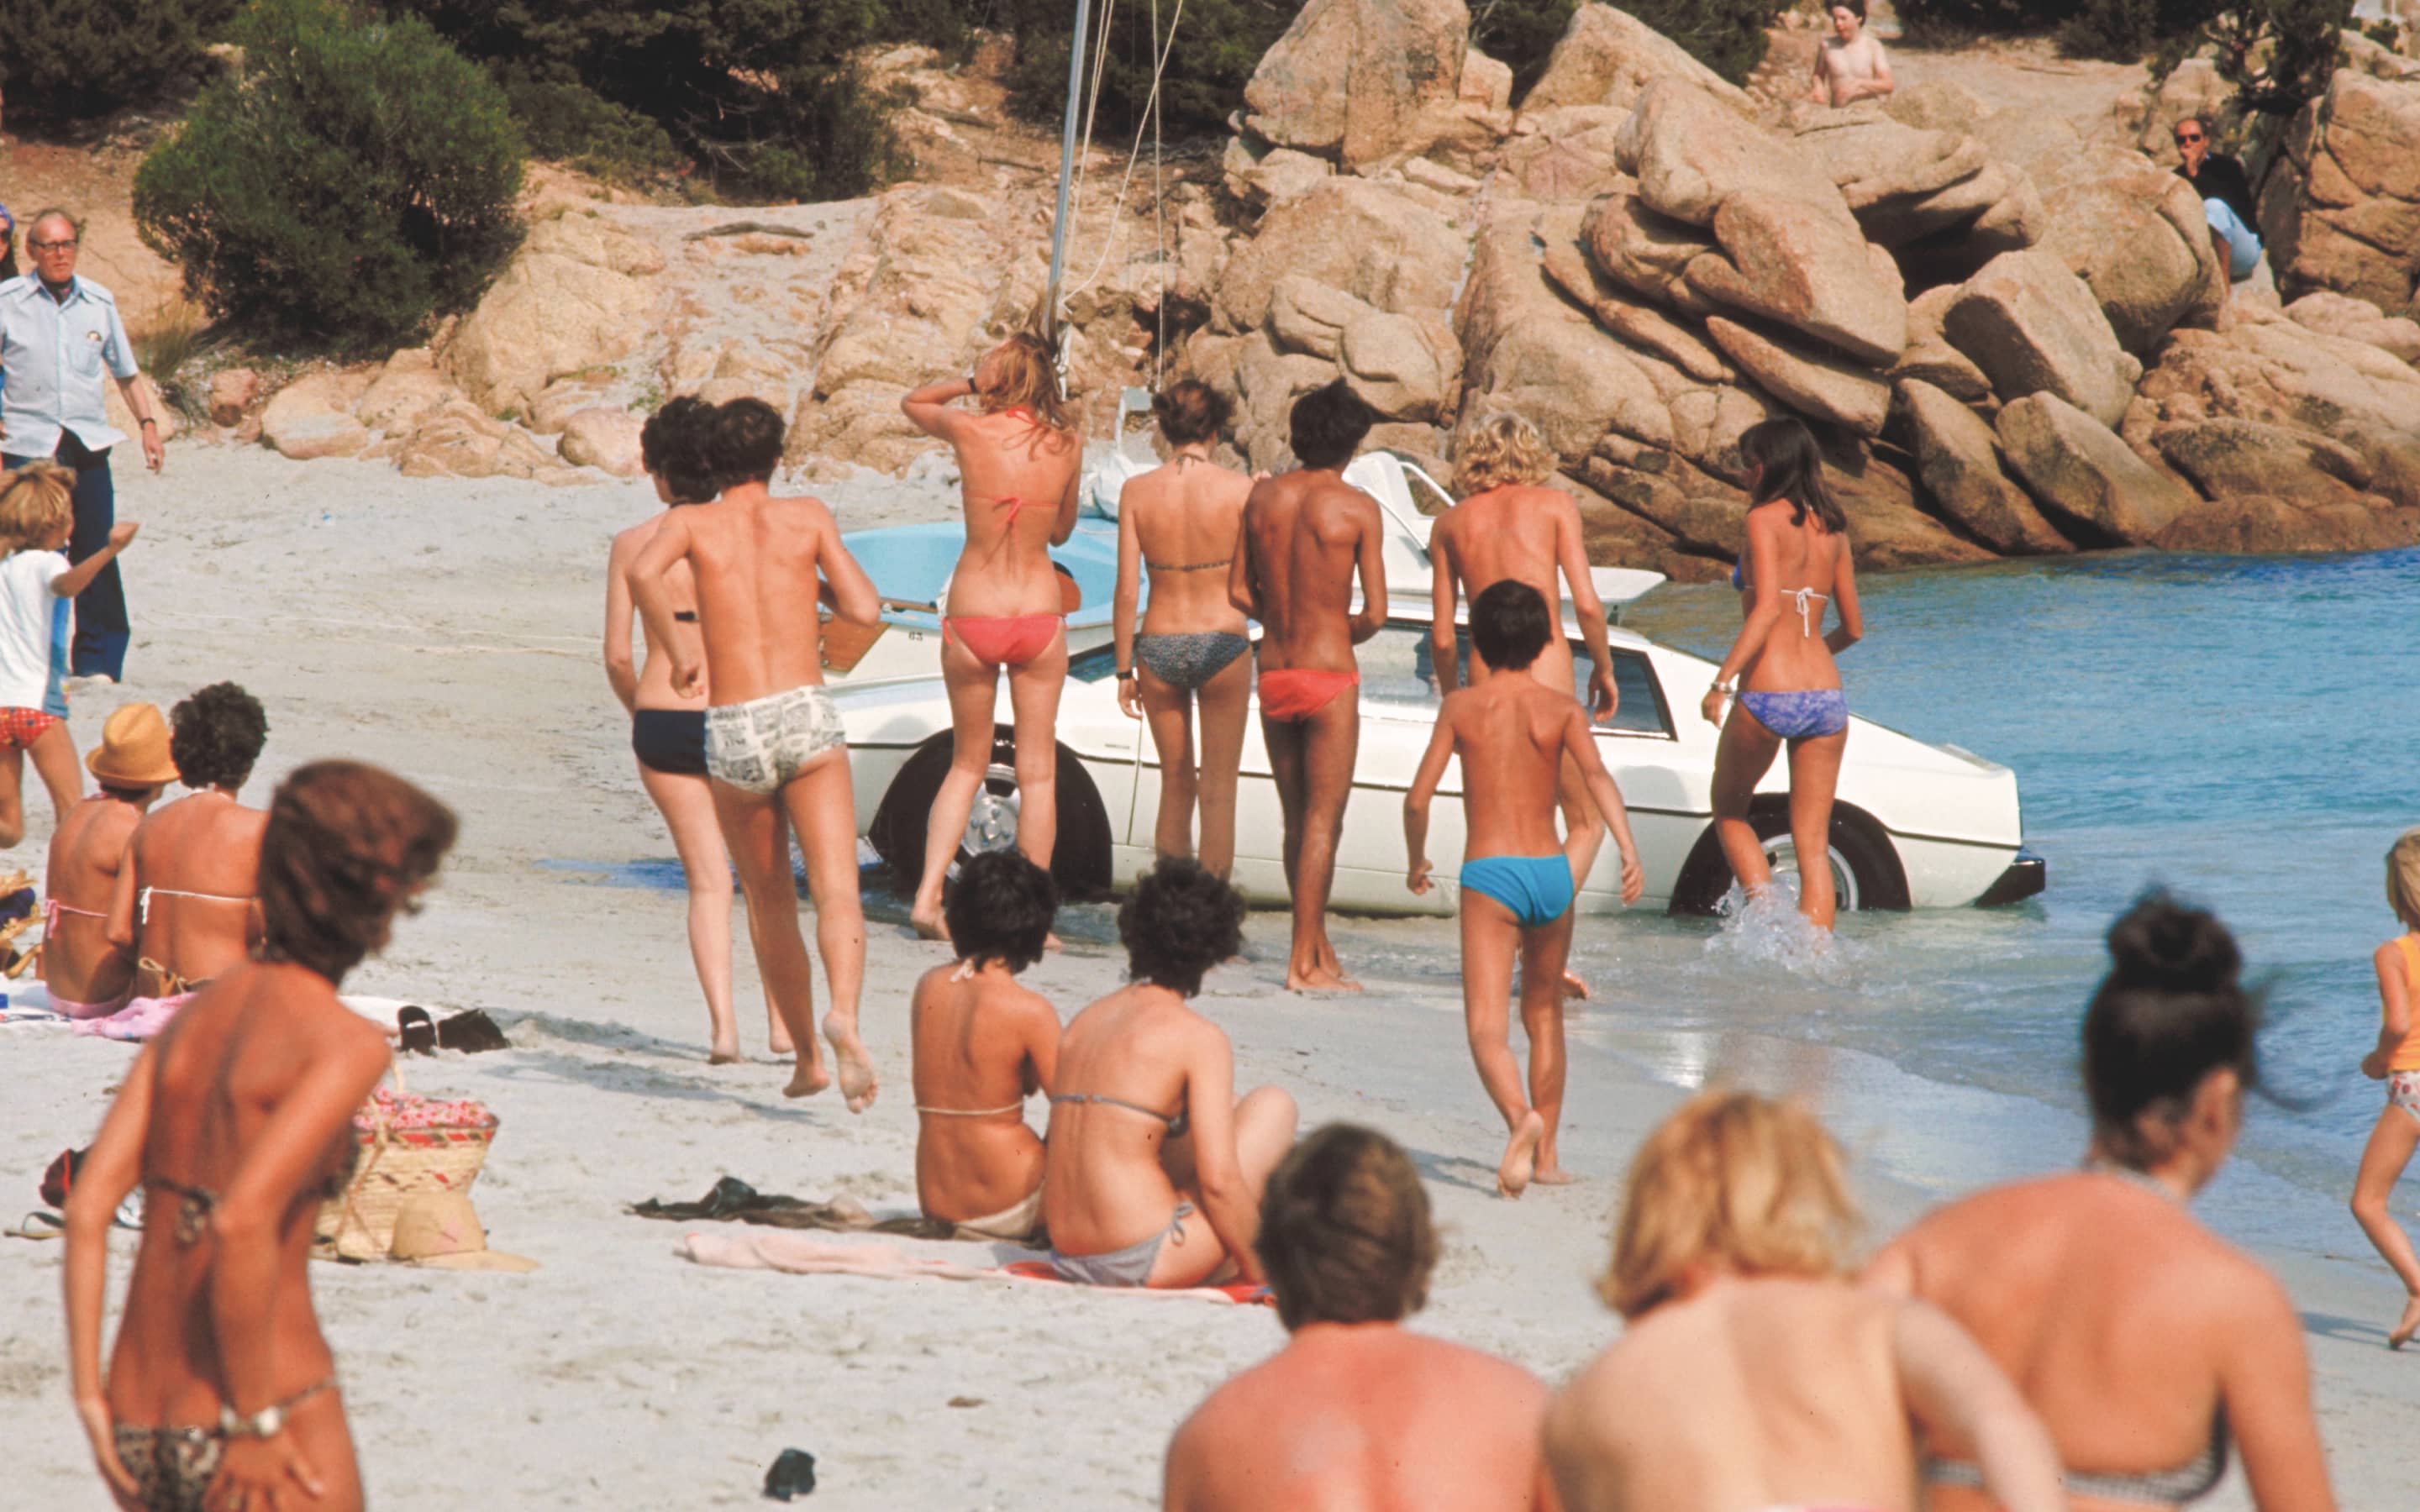 Szene am Strand von Capriccioli auf Sardinien aus "Der Spion, der mich liebte" (1977)